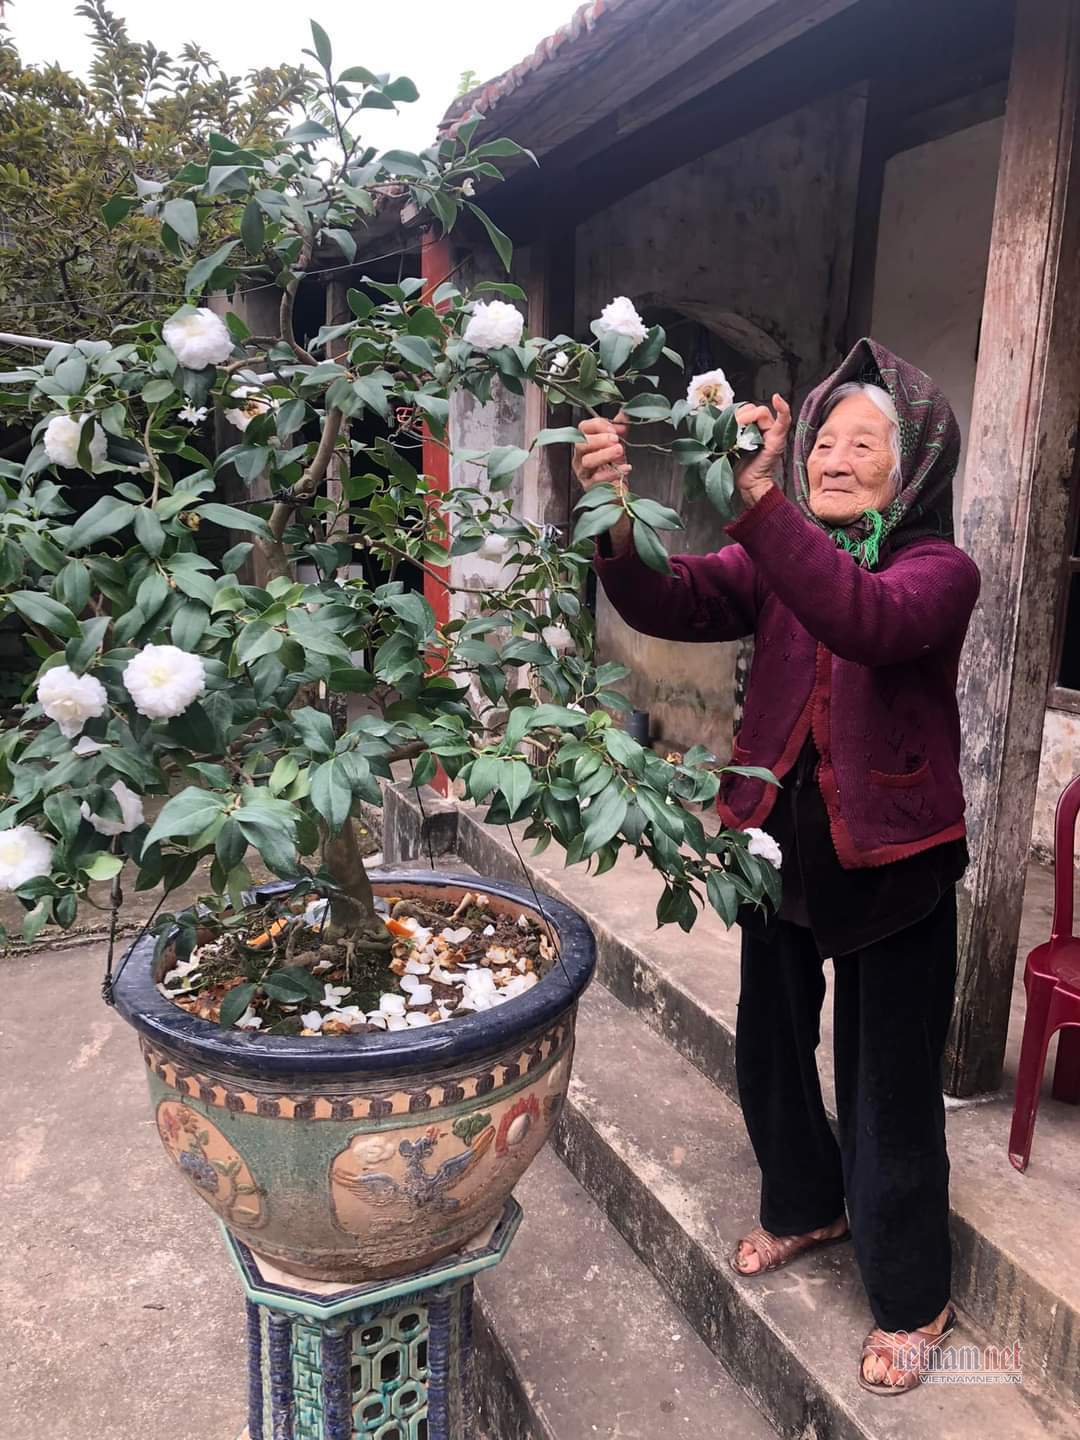 Happiest woman in Vietnam: 108 years old with 114 grandchildren, great-grandchildren